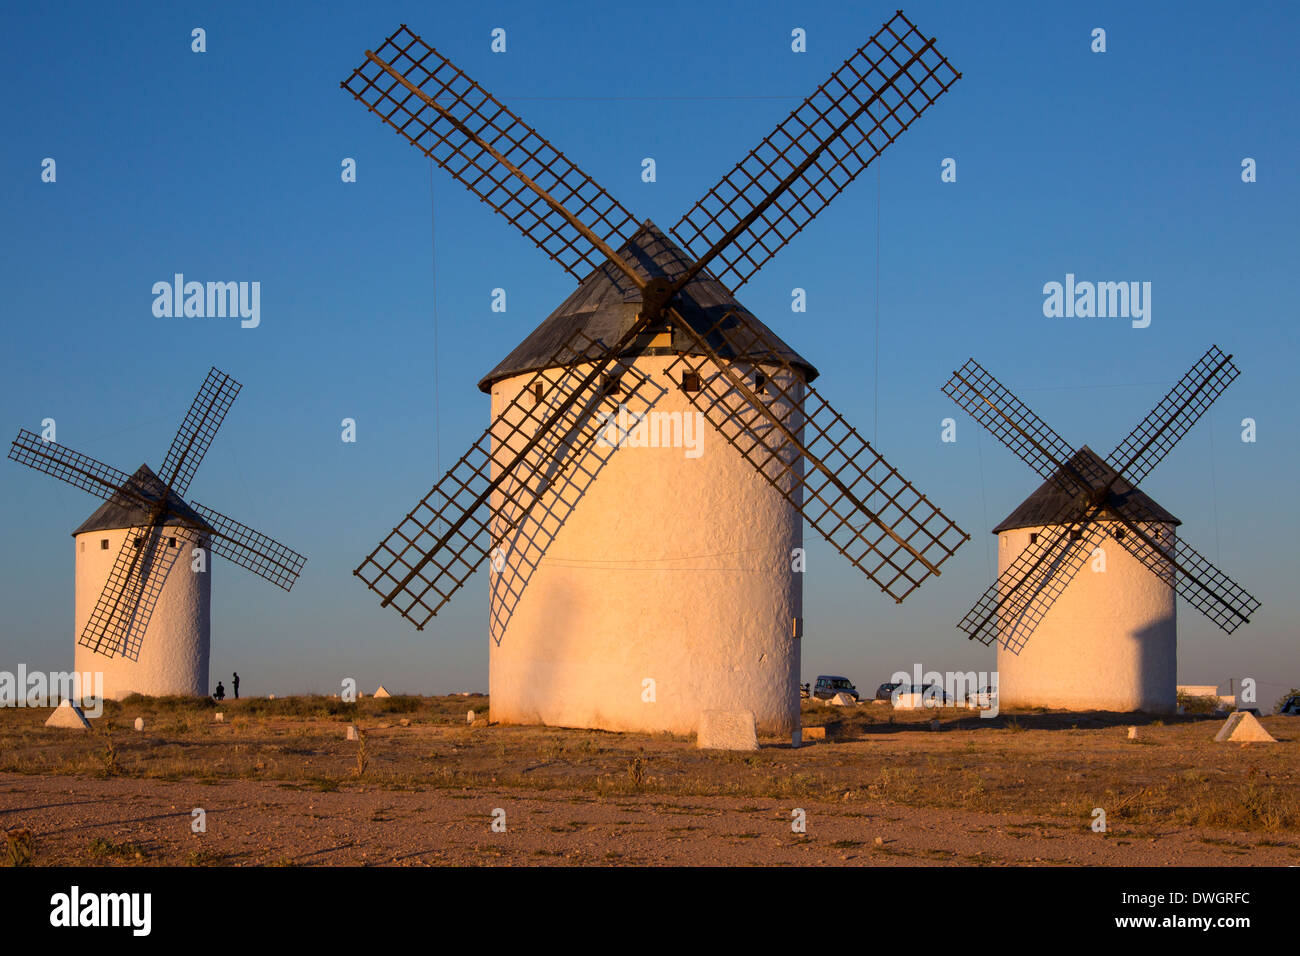 Les moulins à vent de Campo de Criptana dans la région de Castille-La Manche du centre de l'Espagne. Banque D'Images